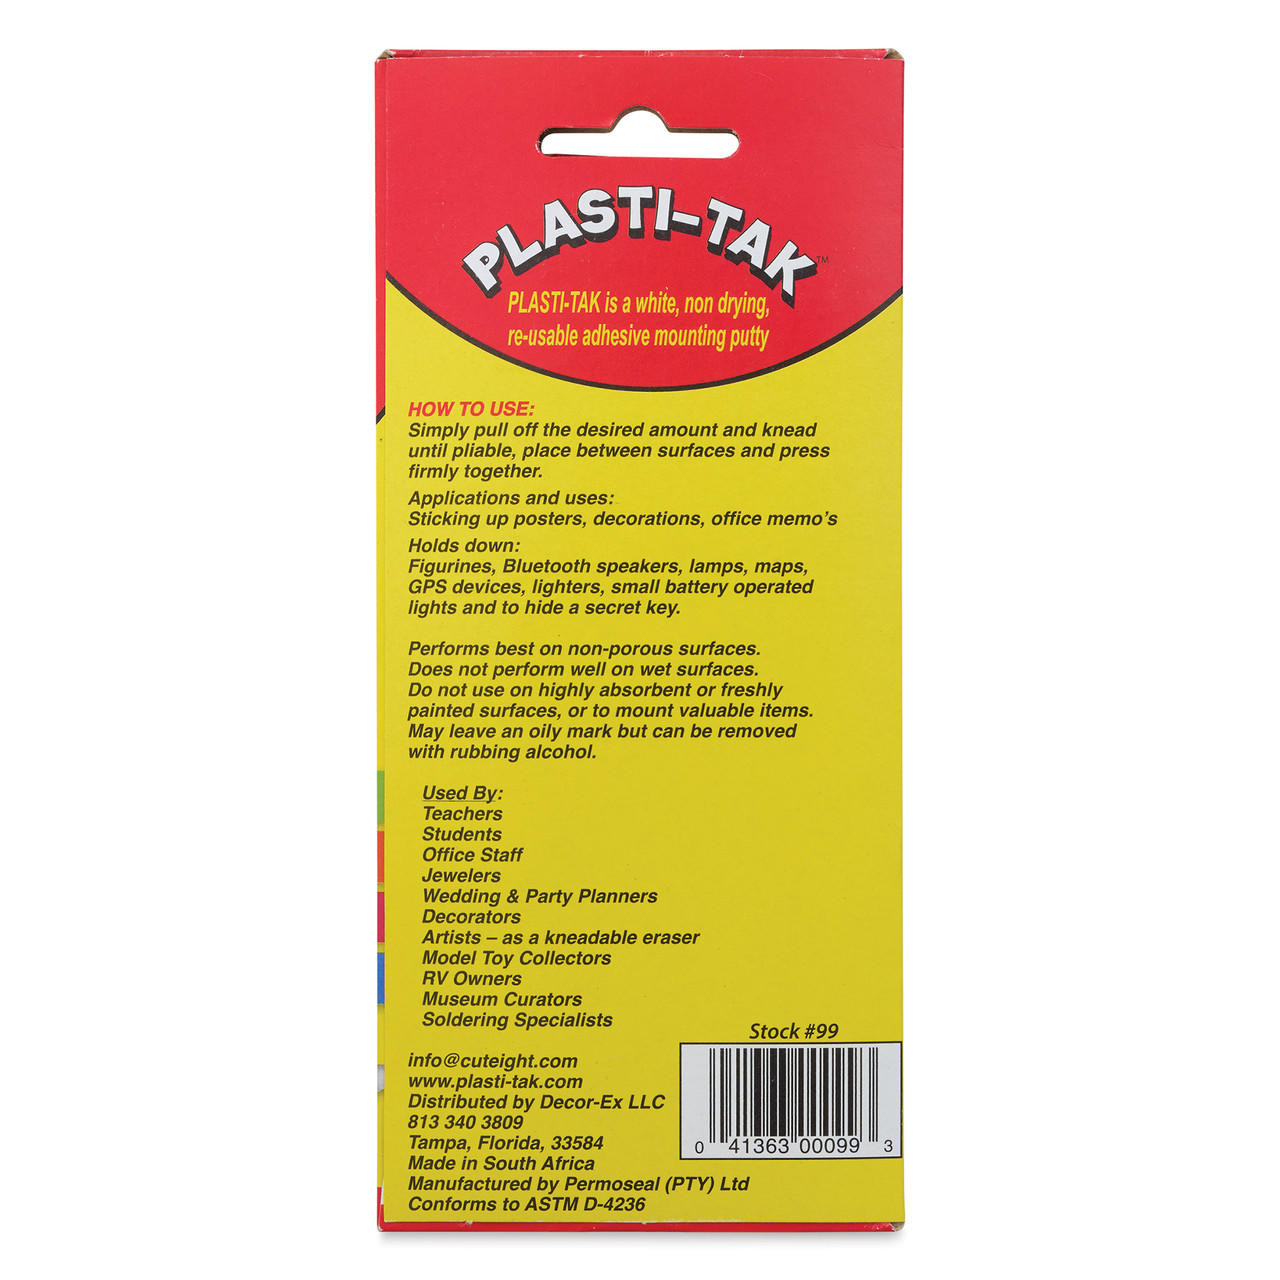 Plasti-Tak Mounting Putty, The Original Re-Usable Adhesive, Non-Drying,  White, 3oz - Sam Flax Atlanta